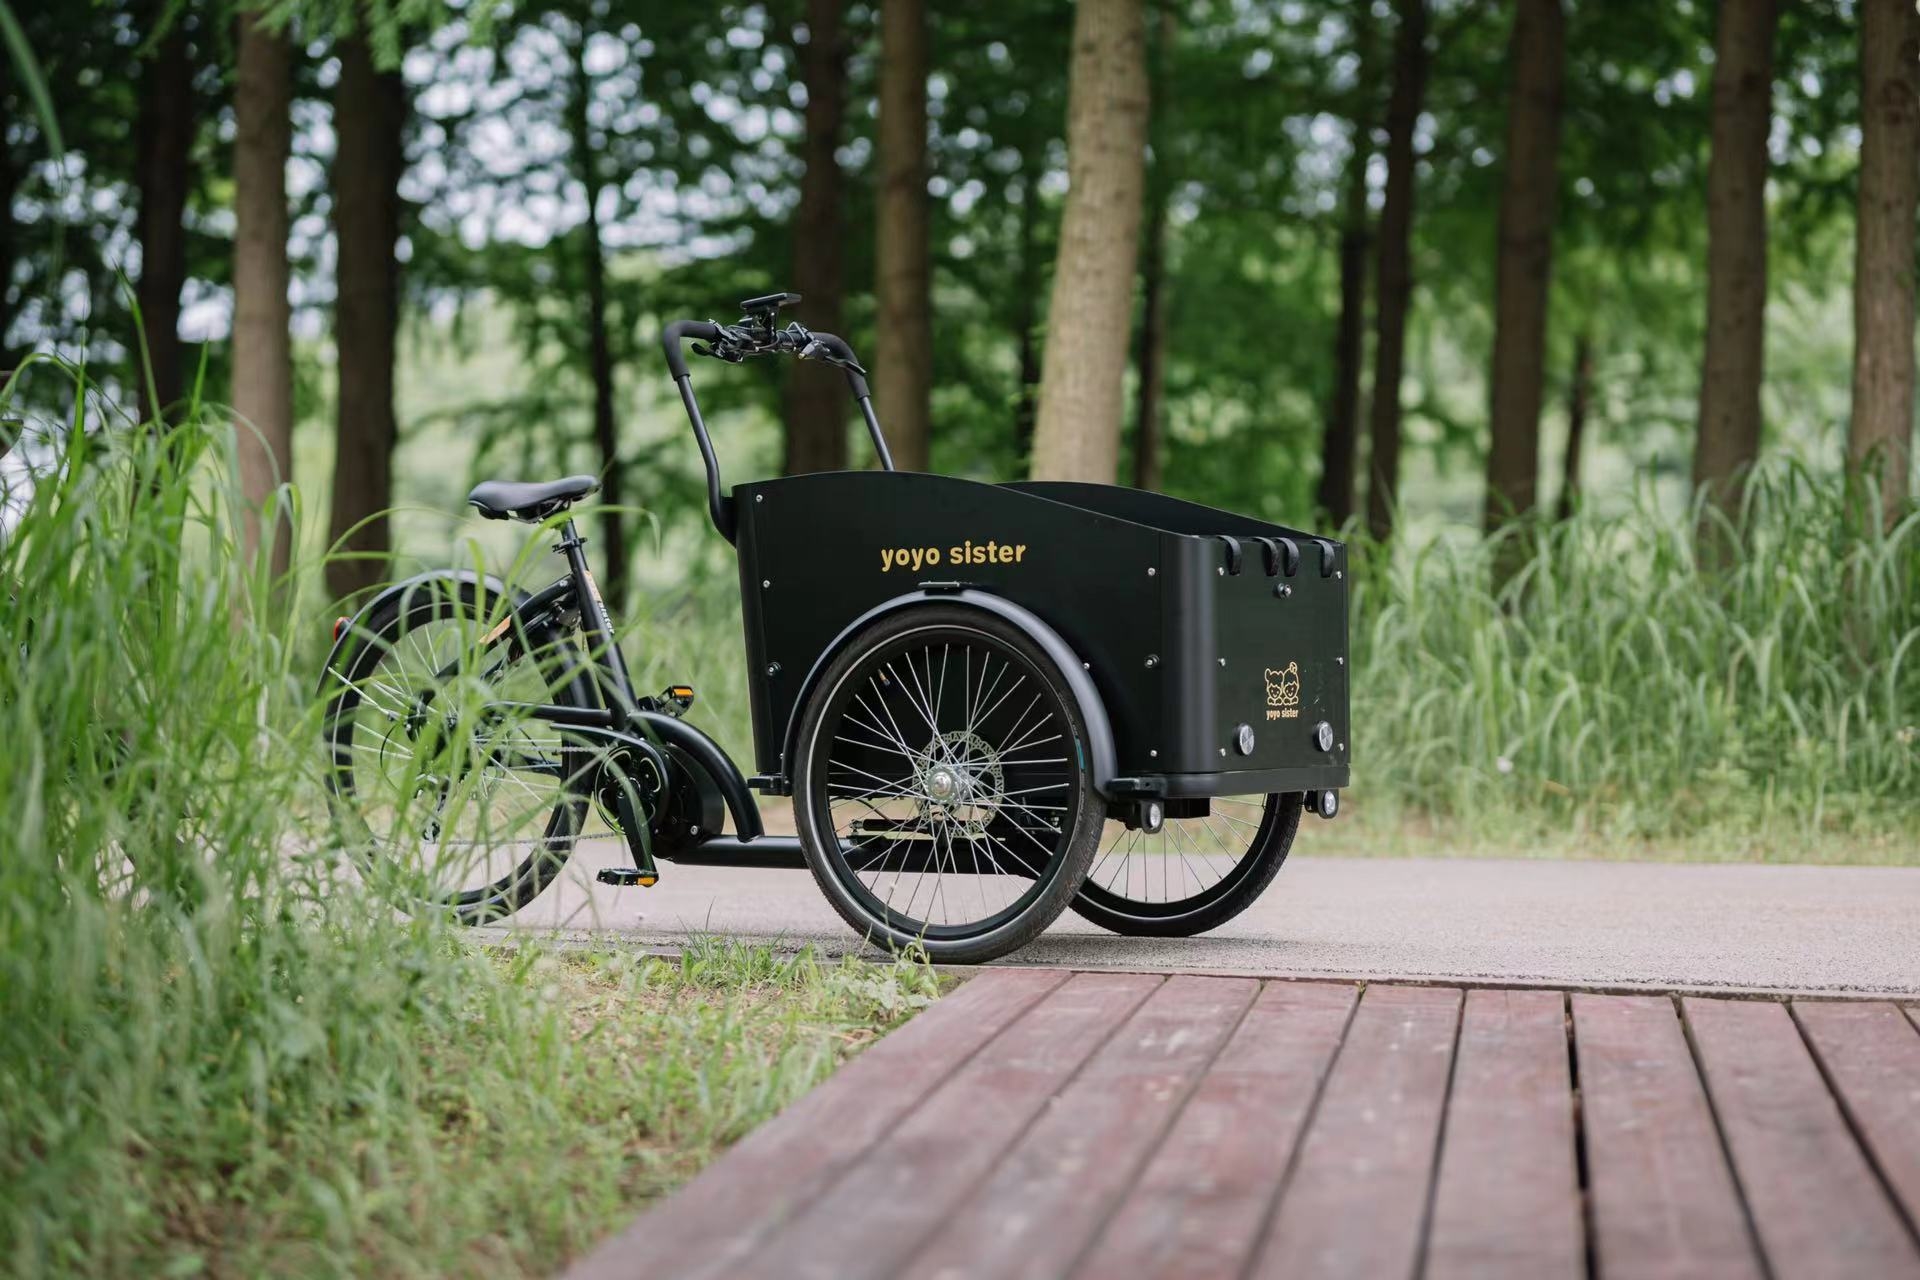 YOYOSISTERs nye produkt UB9052E er offisielt lansert, denne tohjulede lastesykkelen er den siste forskningen til vårt designteam.